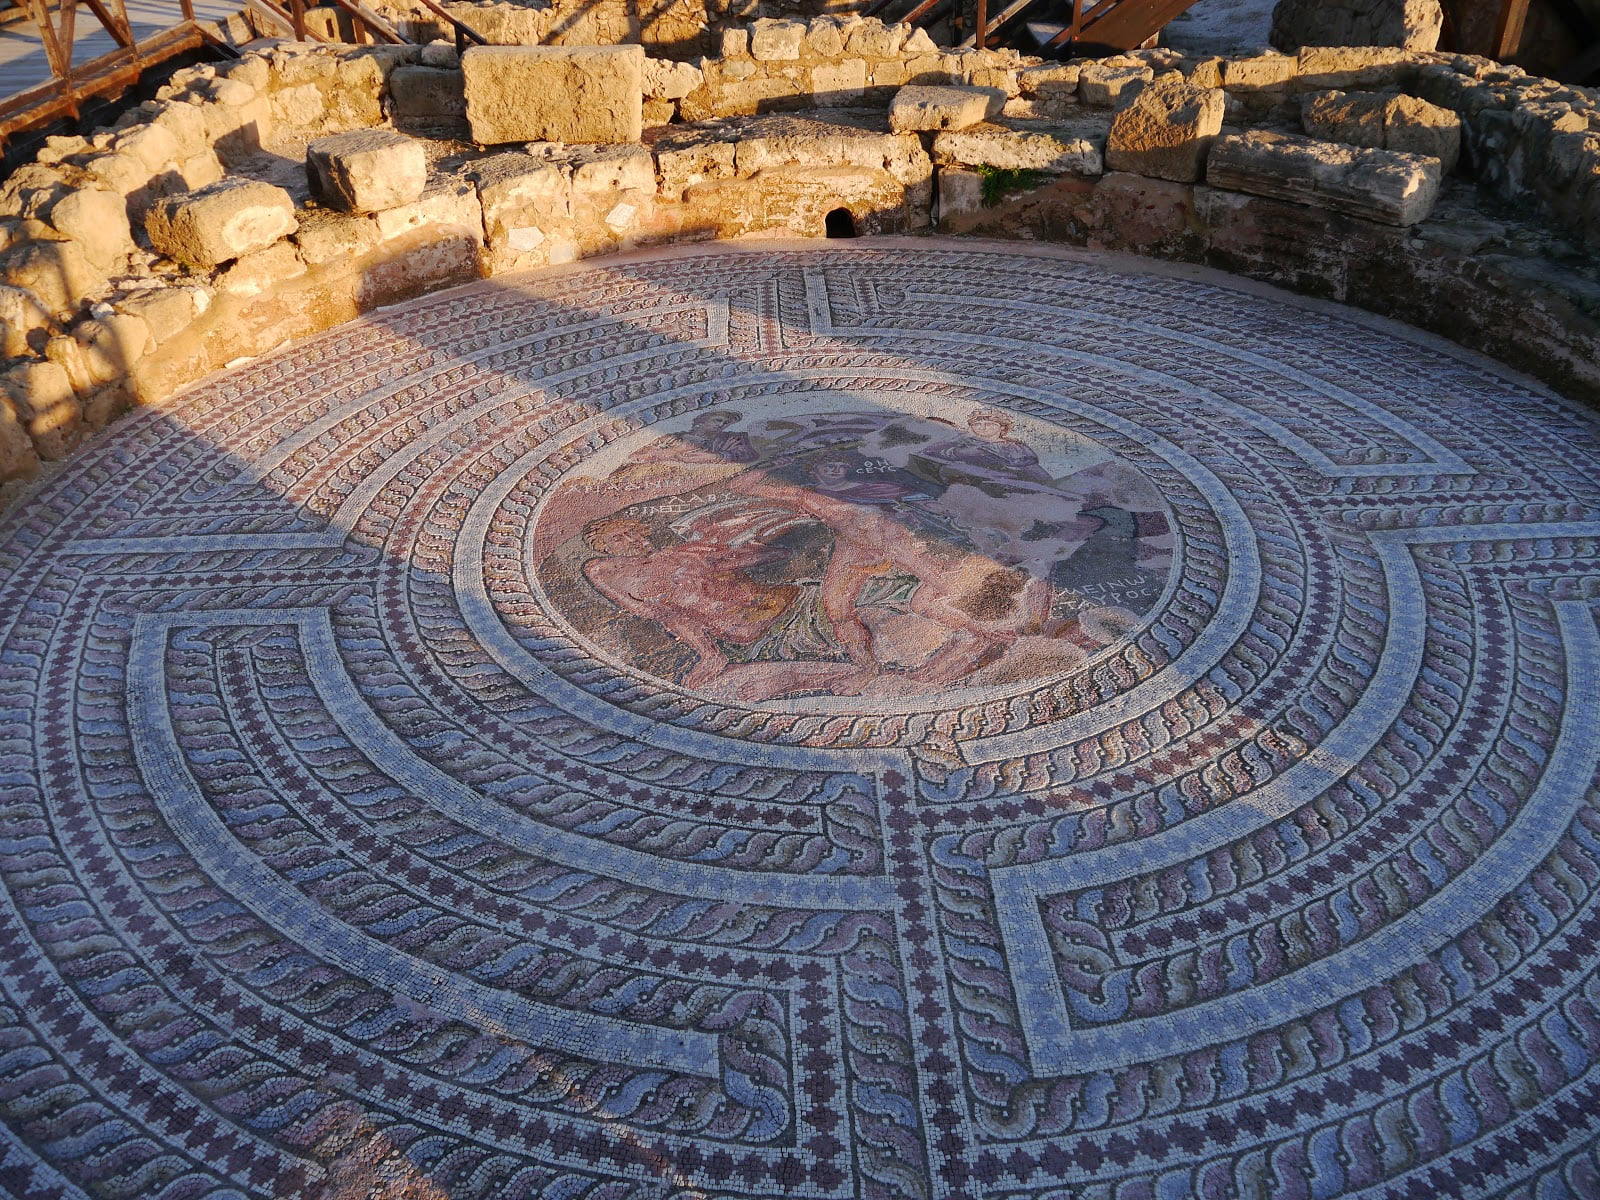 Kato Paphos Archaeological Park